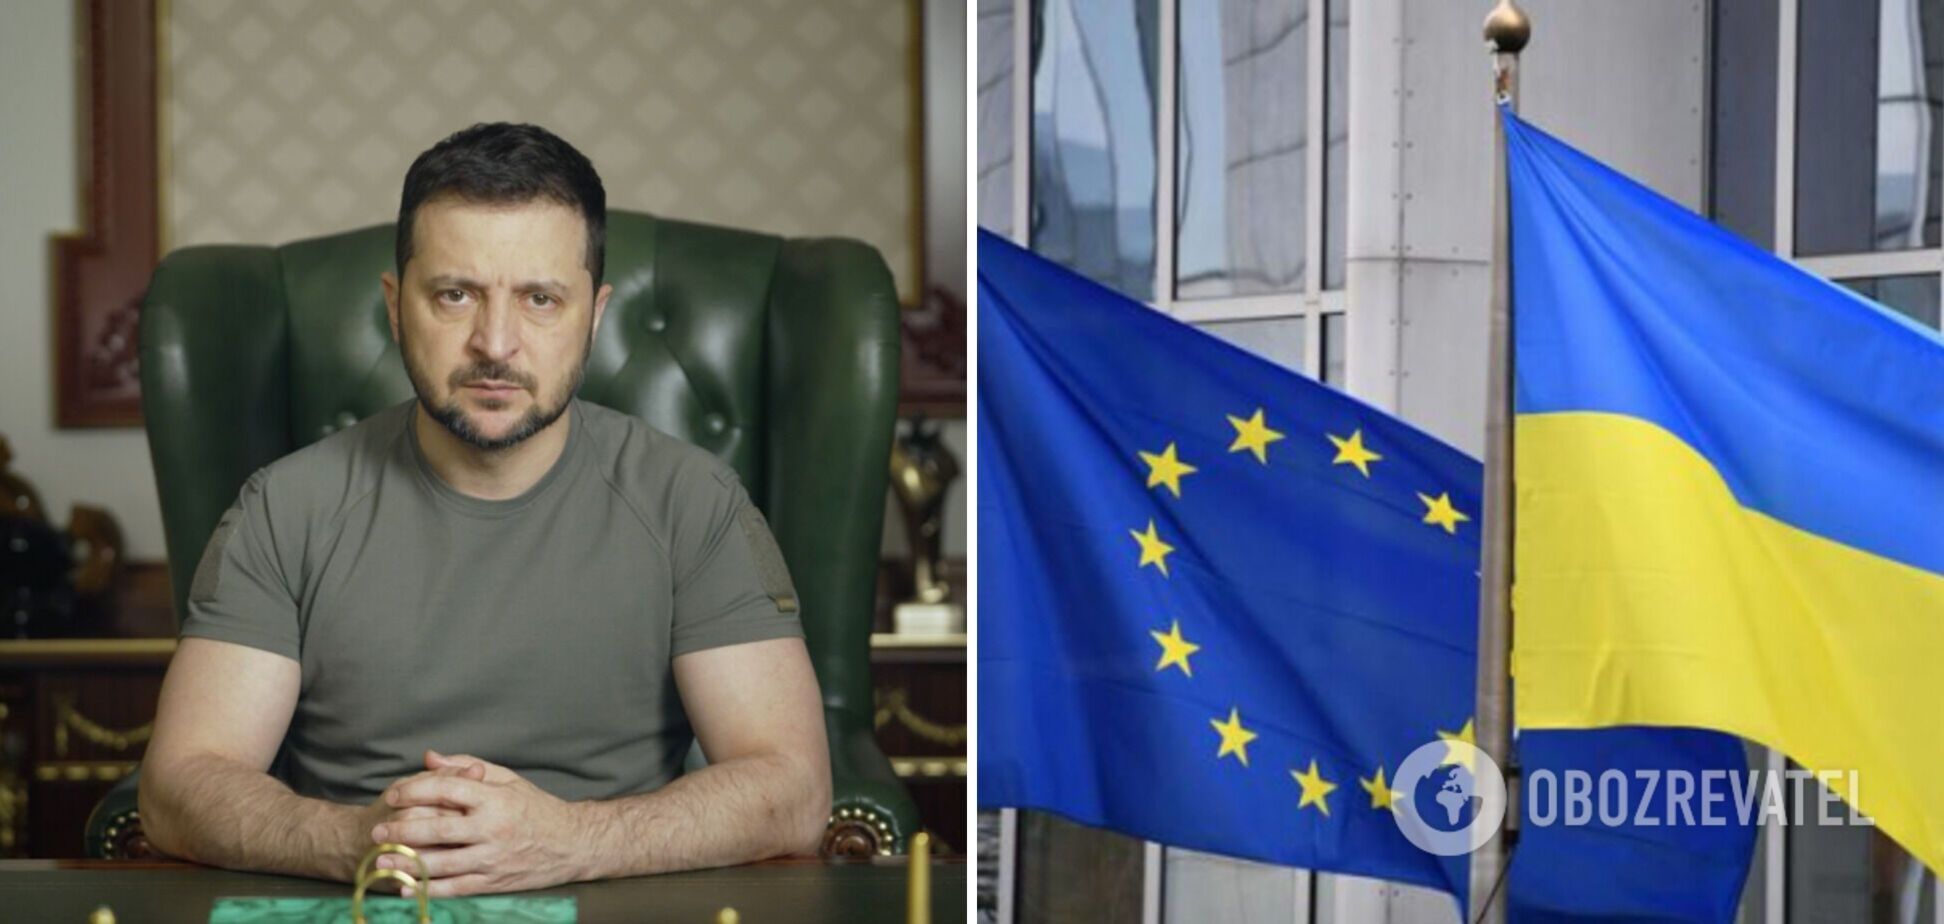 Зеленський: Єврокомісія скоро почне оцінку українських законів на відповідність законодавству ЄС